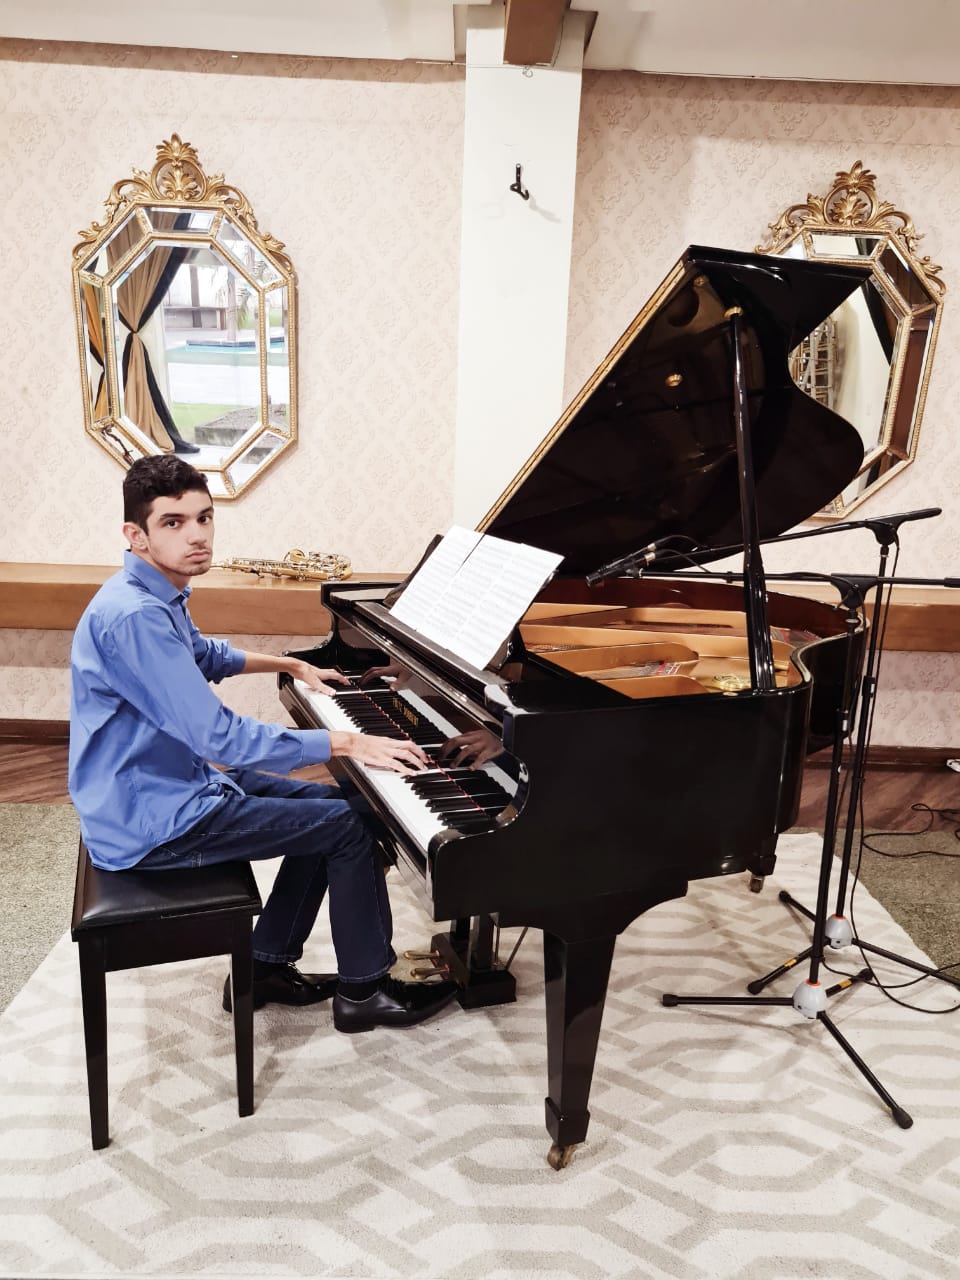 Promessa do piano clássico, José Ribamar apresenta seu primeiro recital nesta quinta-feira (1)